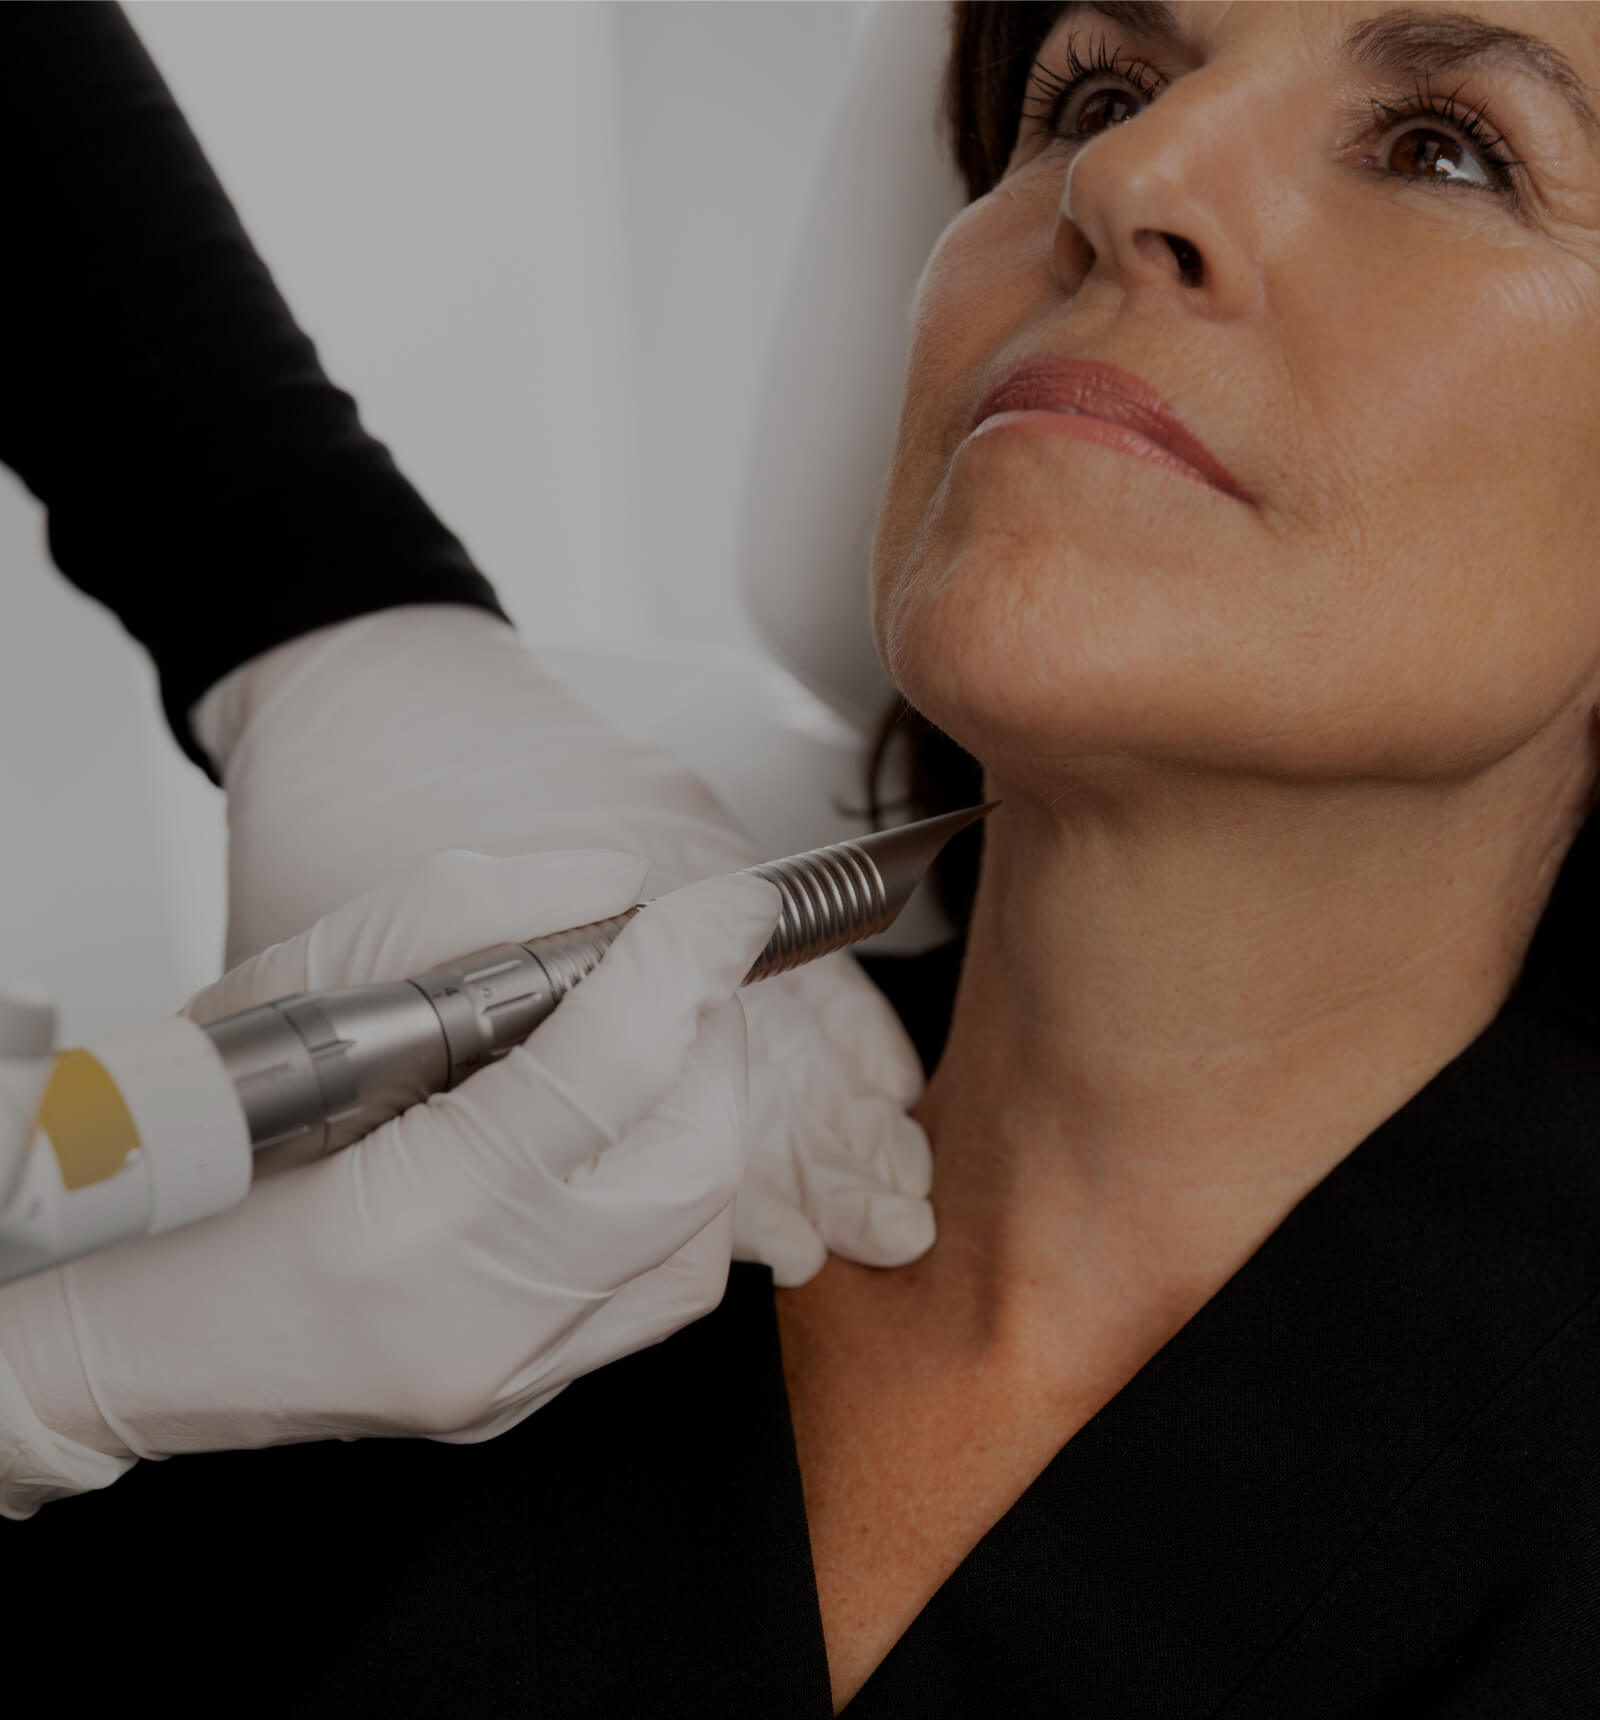 Une technicienne médico-esthétique de la Clinique Chloé traitant le cou d'une patiente avec le laser Fotona 4D